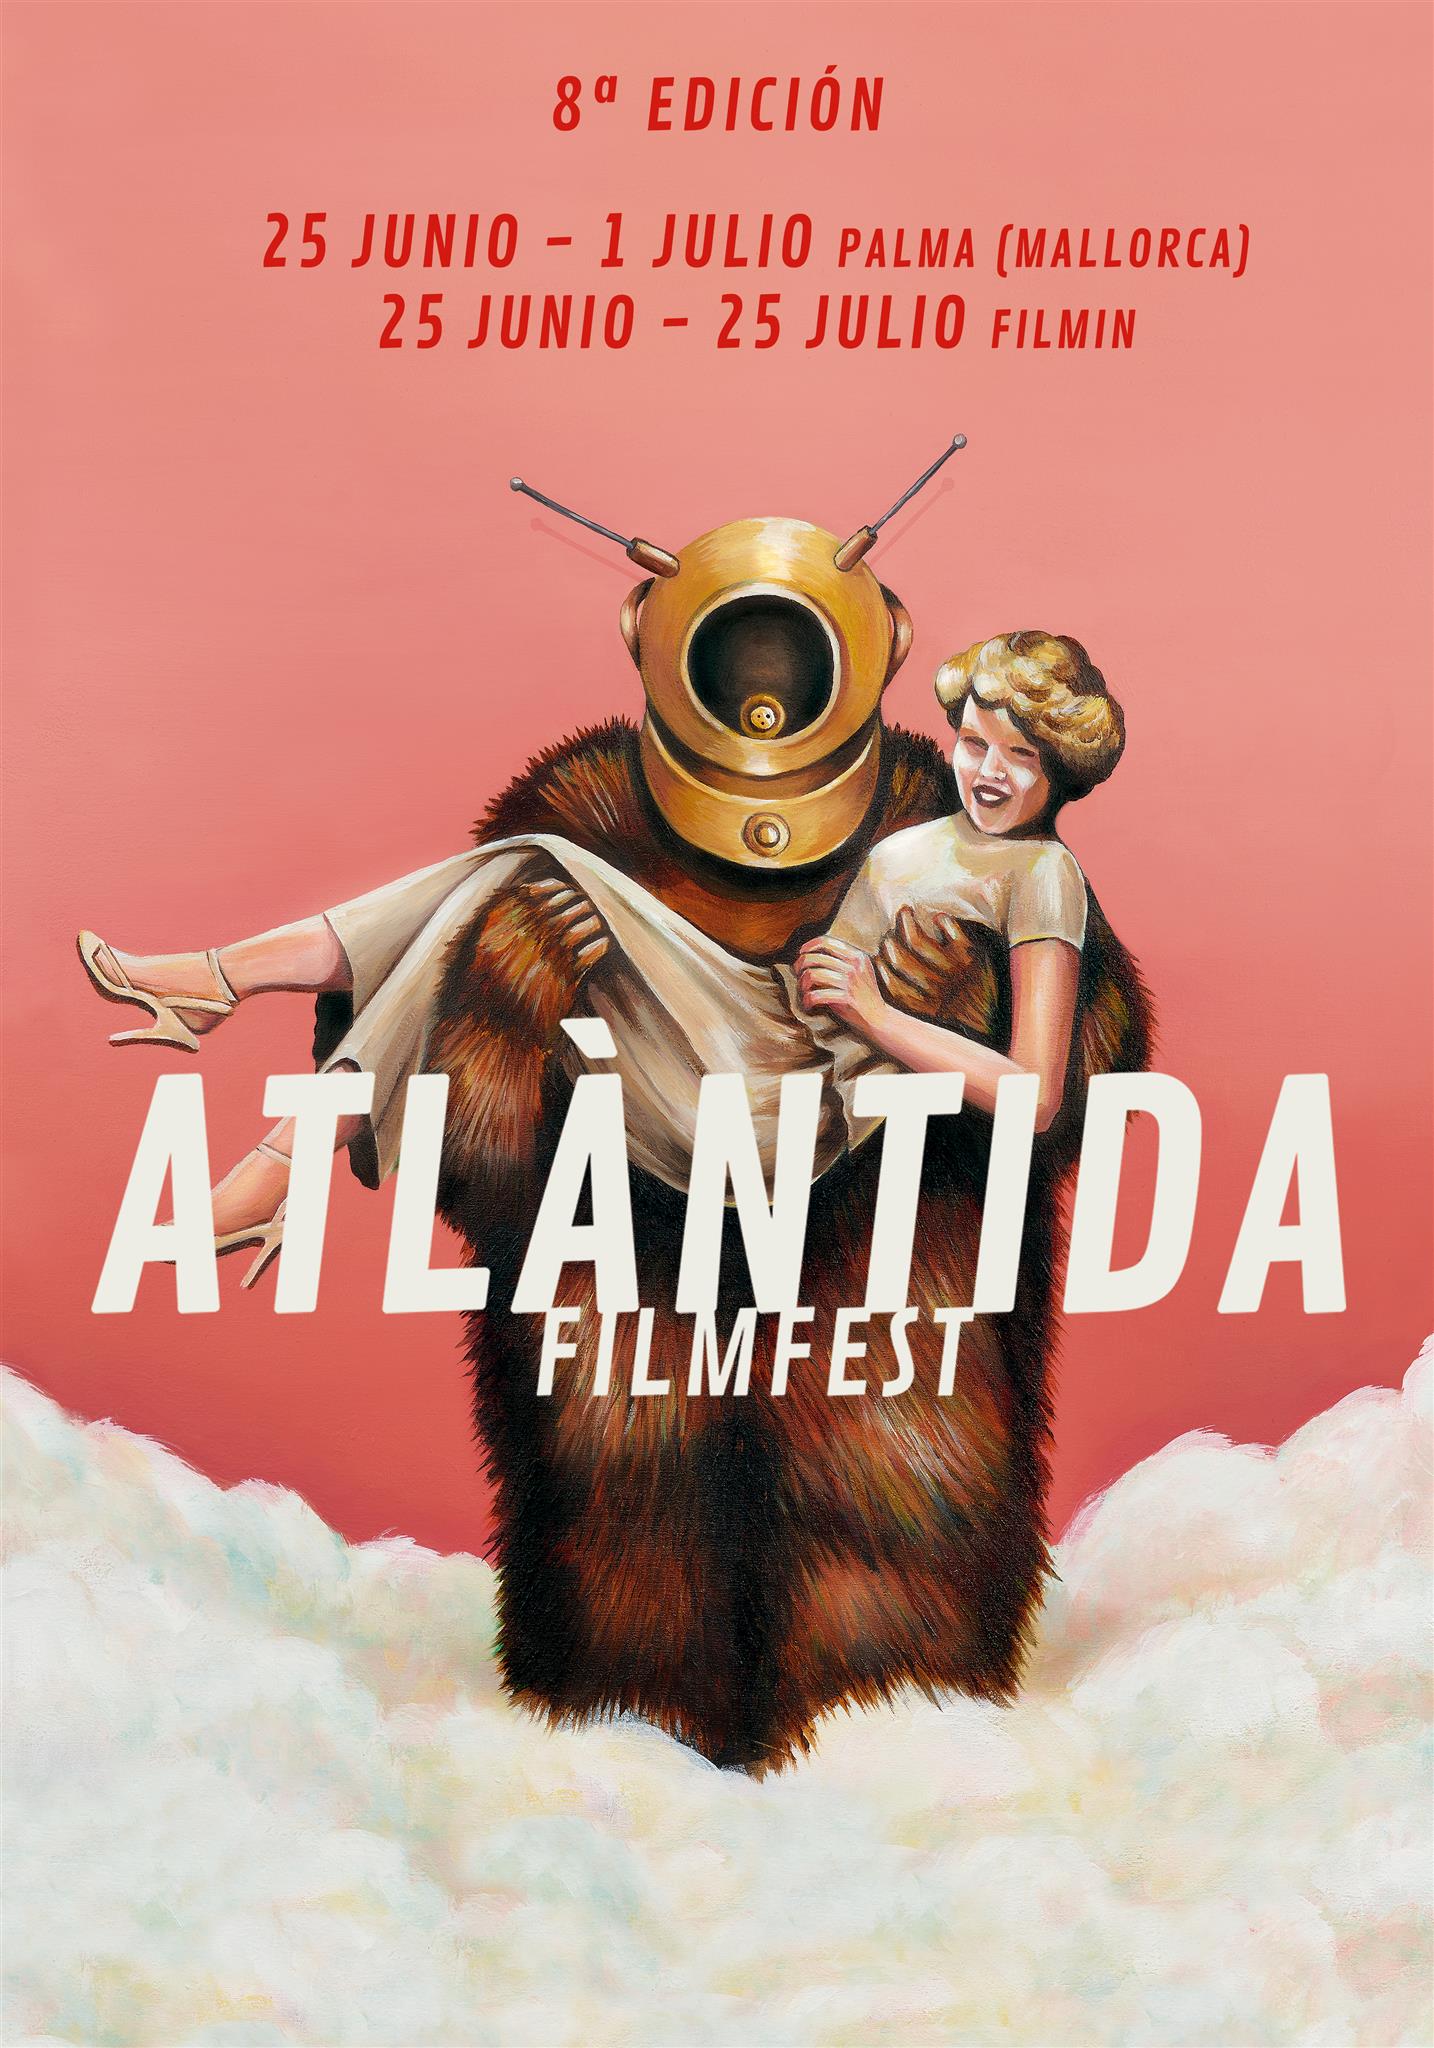 Programación online del Atlántida Film Fest